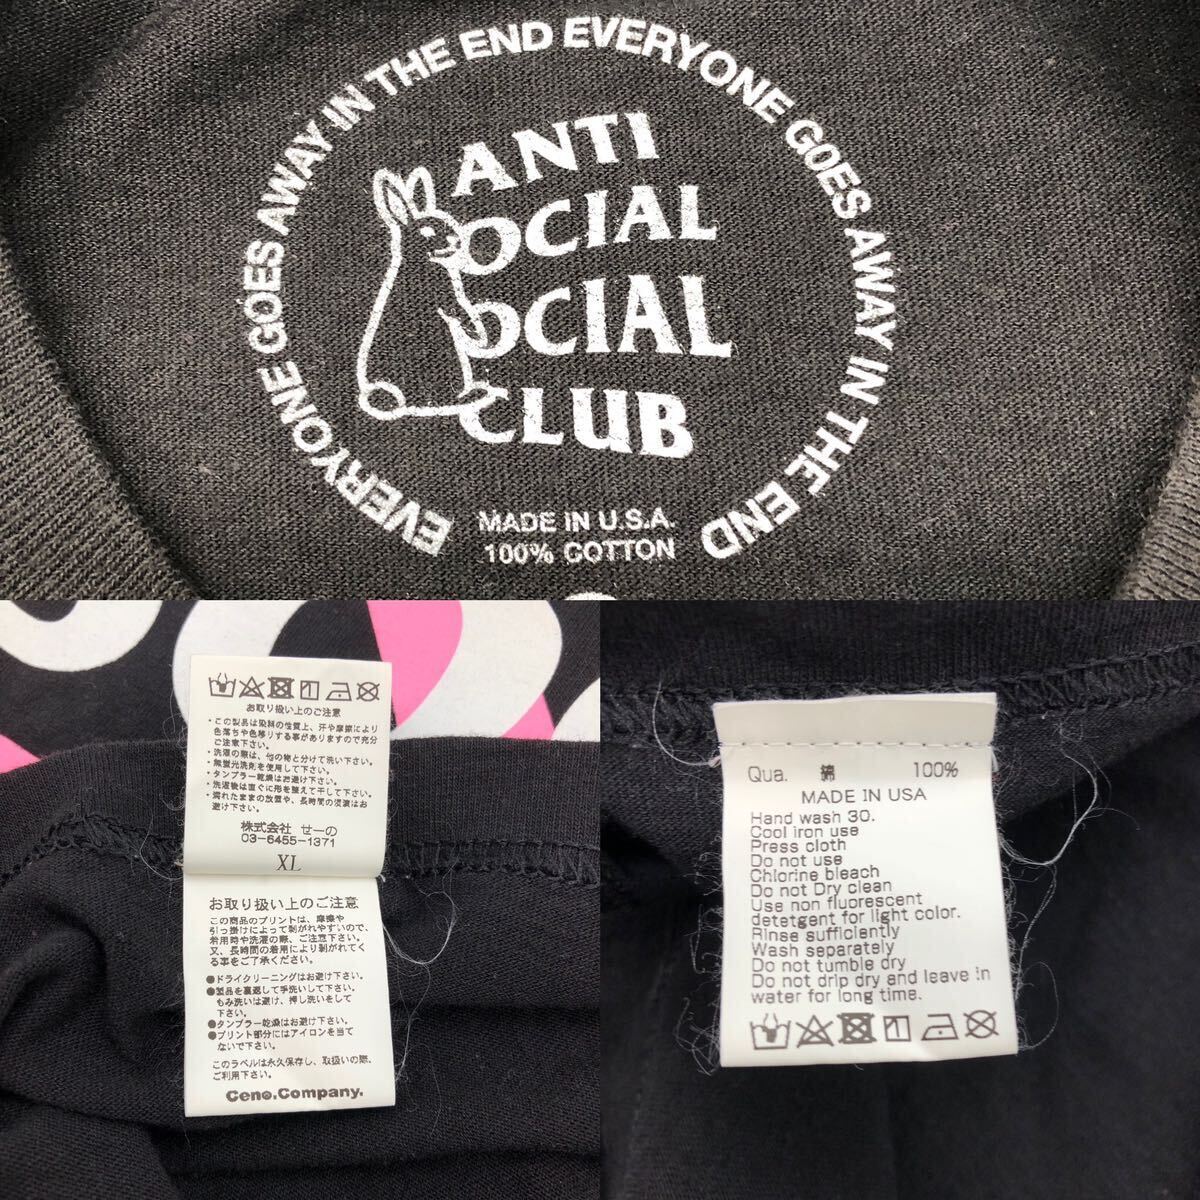 【XL】FR2 Anti Social Social Club Smoking Kills Print Tee shirt Black エフアール2 アンチソーシャルクラブ Tシャツ ブラック T242_画像9